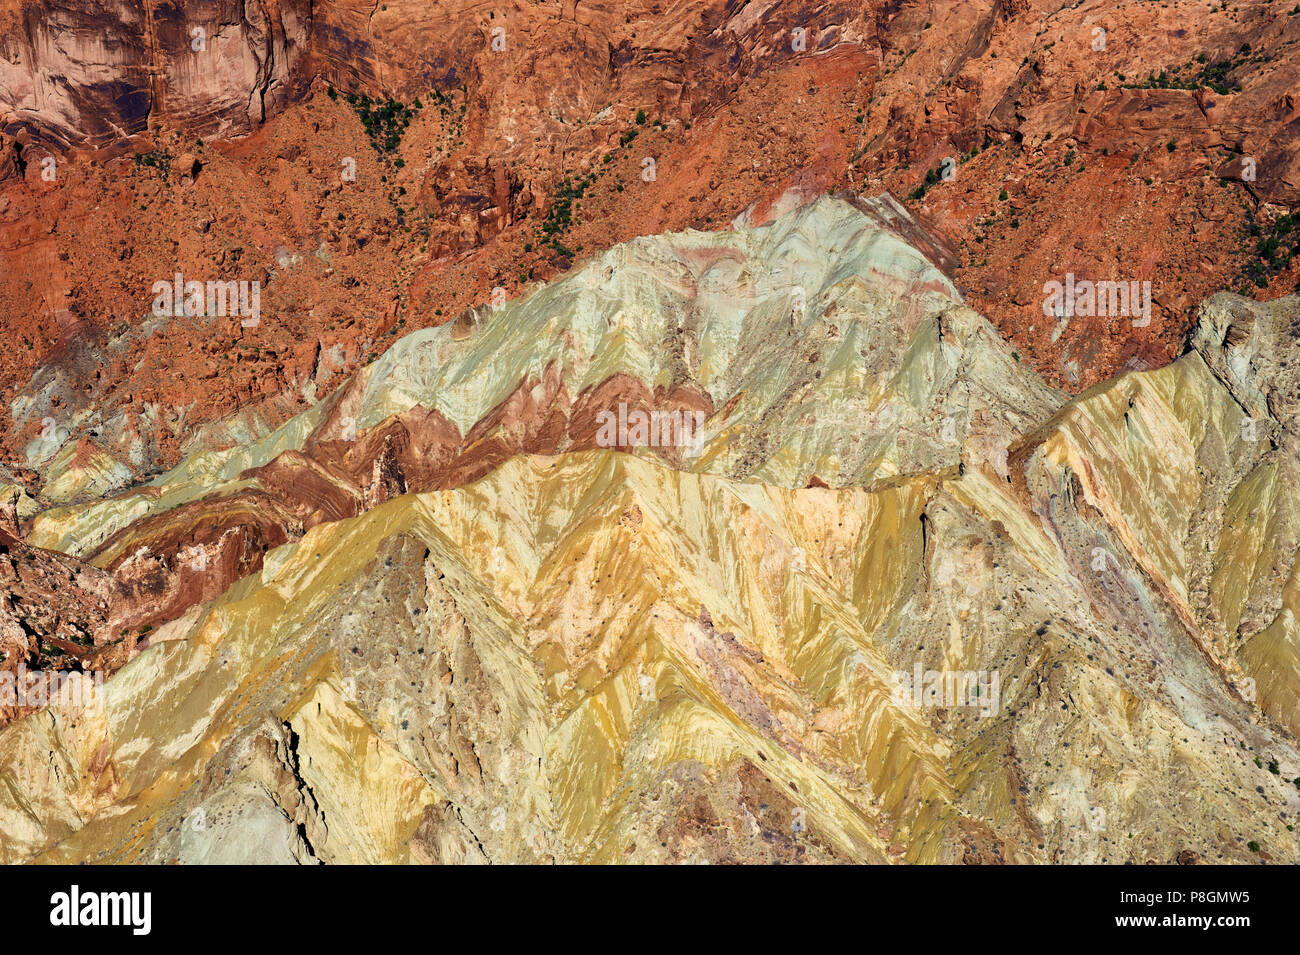 Les formations géologiques colorées en plein bouleversement, le Dôme érodé fond d'un cratère d'impact, Canyonlands National Park, Utah, USA. Banque D'Images